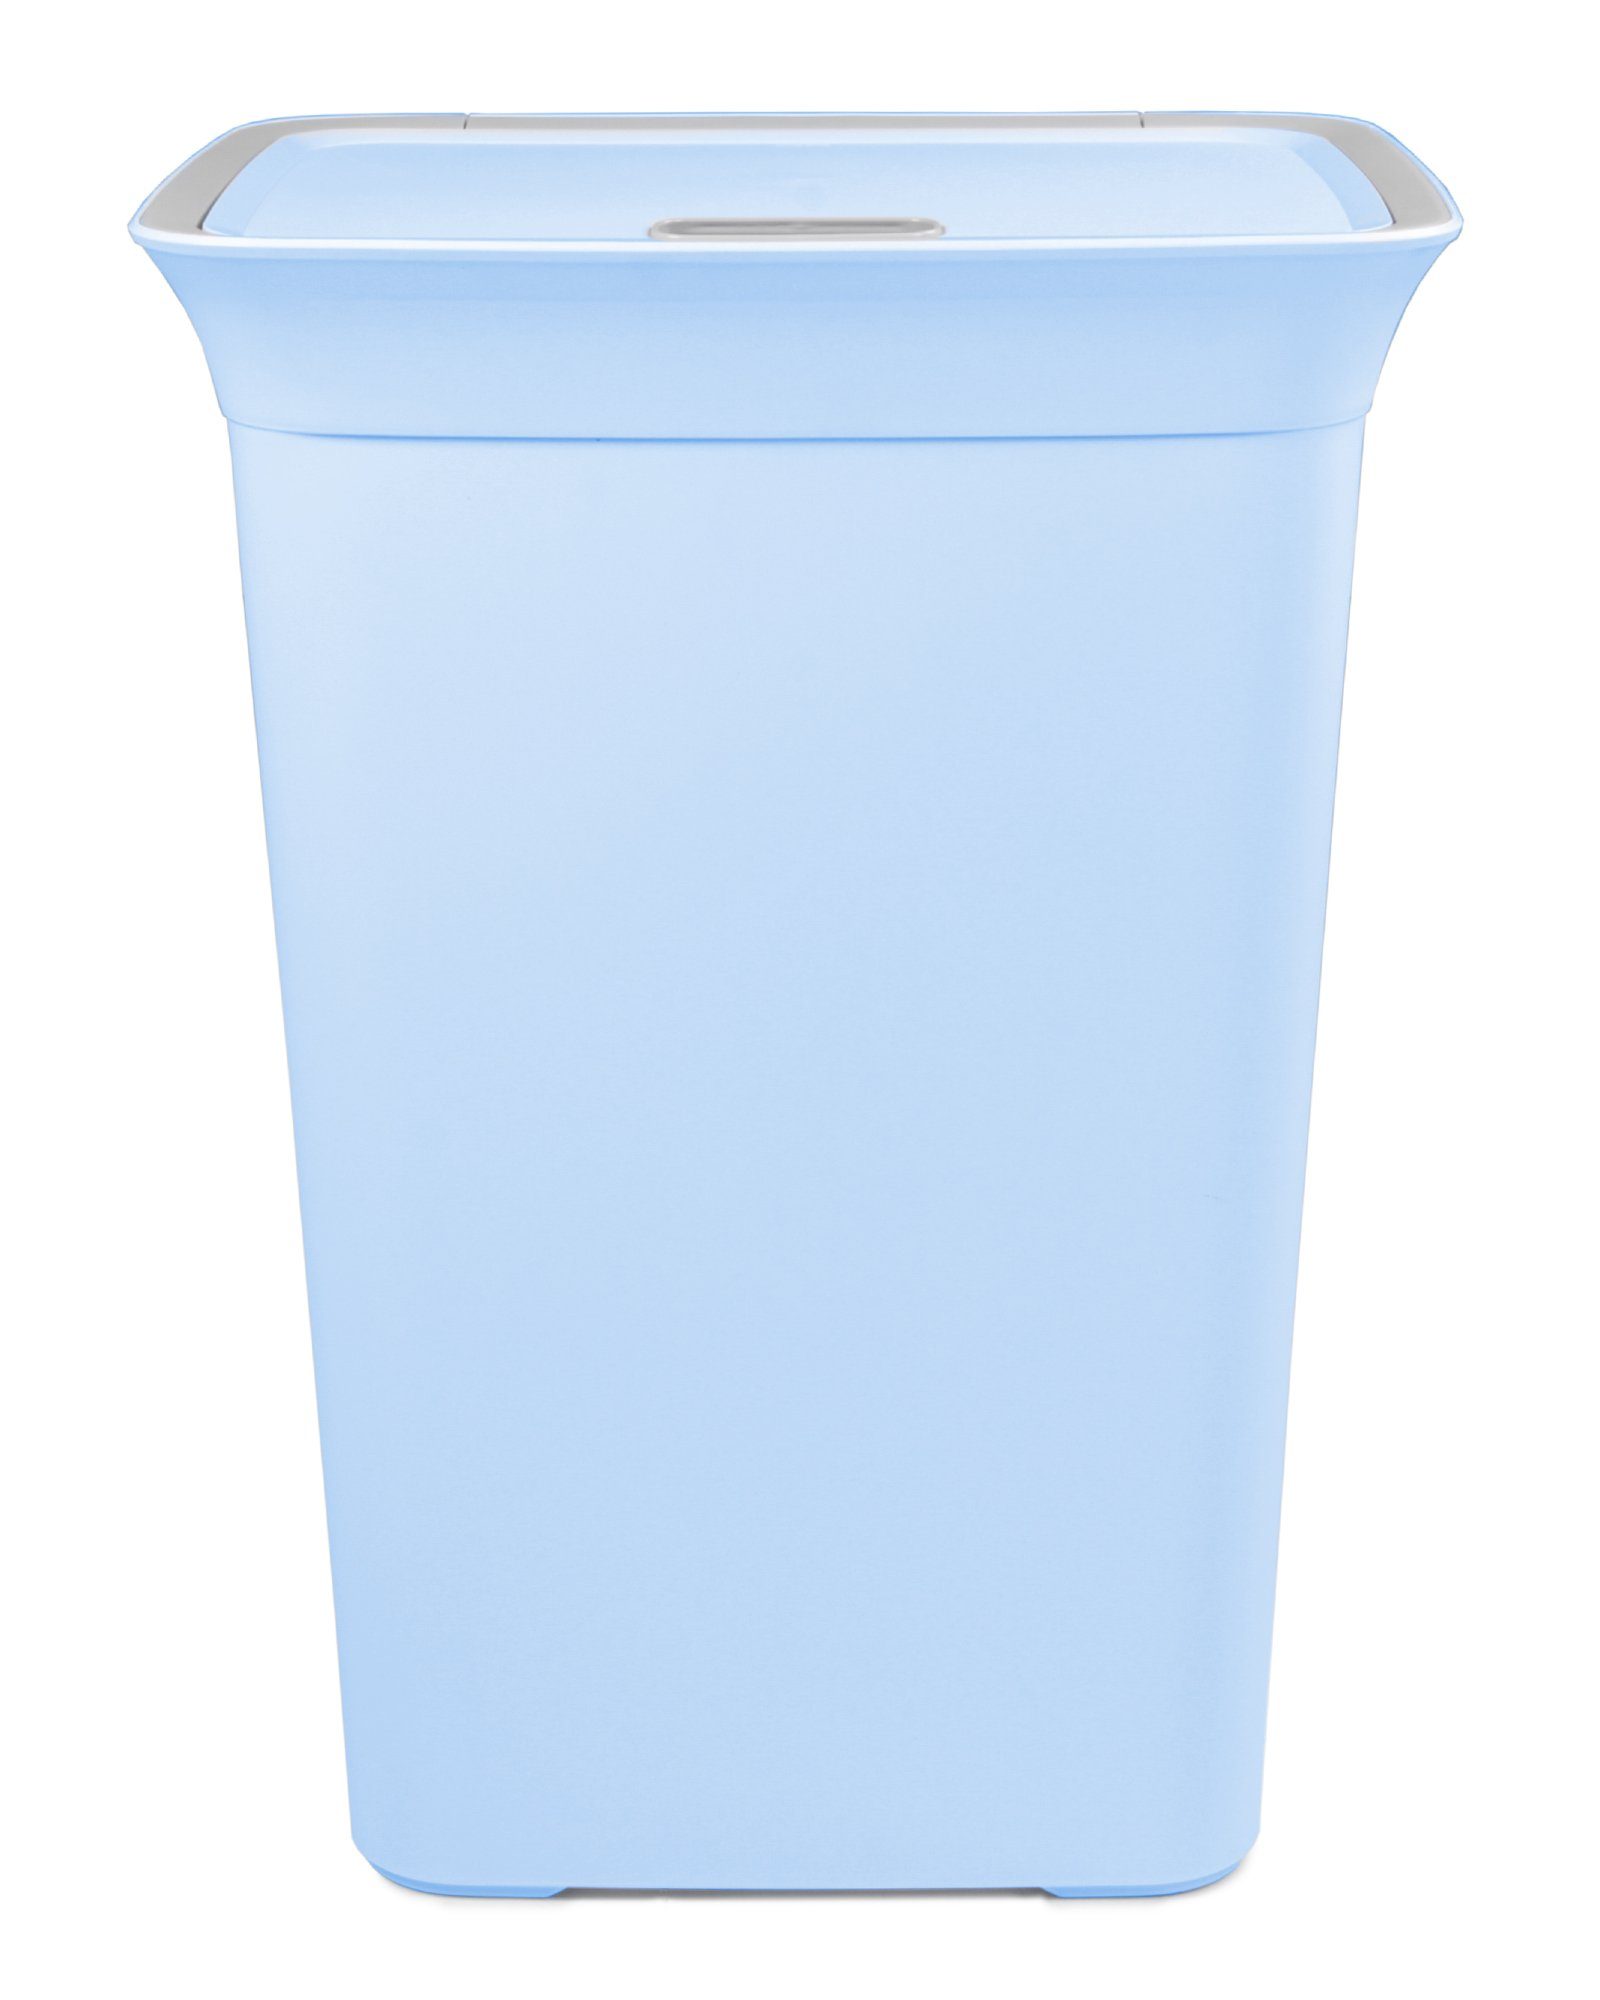 ONDIS24 Wäschekorb »Wäschetruhe Wäschekorb mit Belüftung Moda 60 Liter mit  Deckel Wäschesammler« online kaufen | OTTO